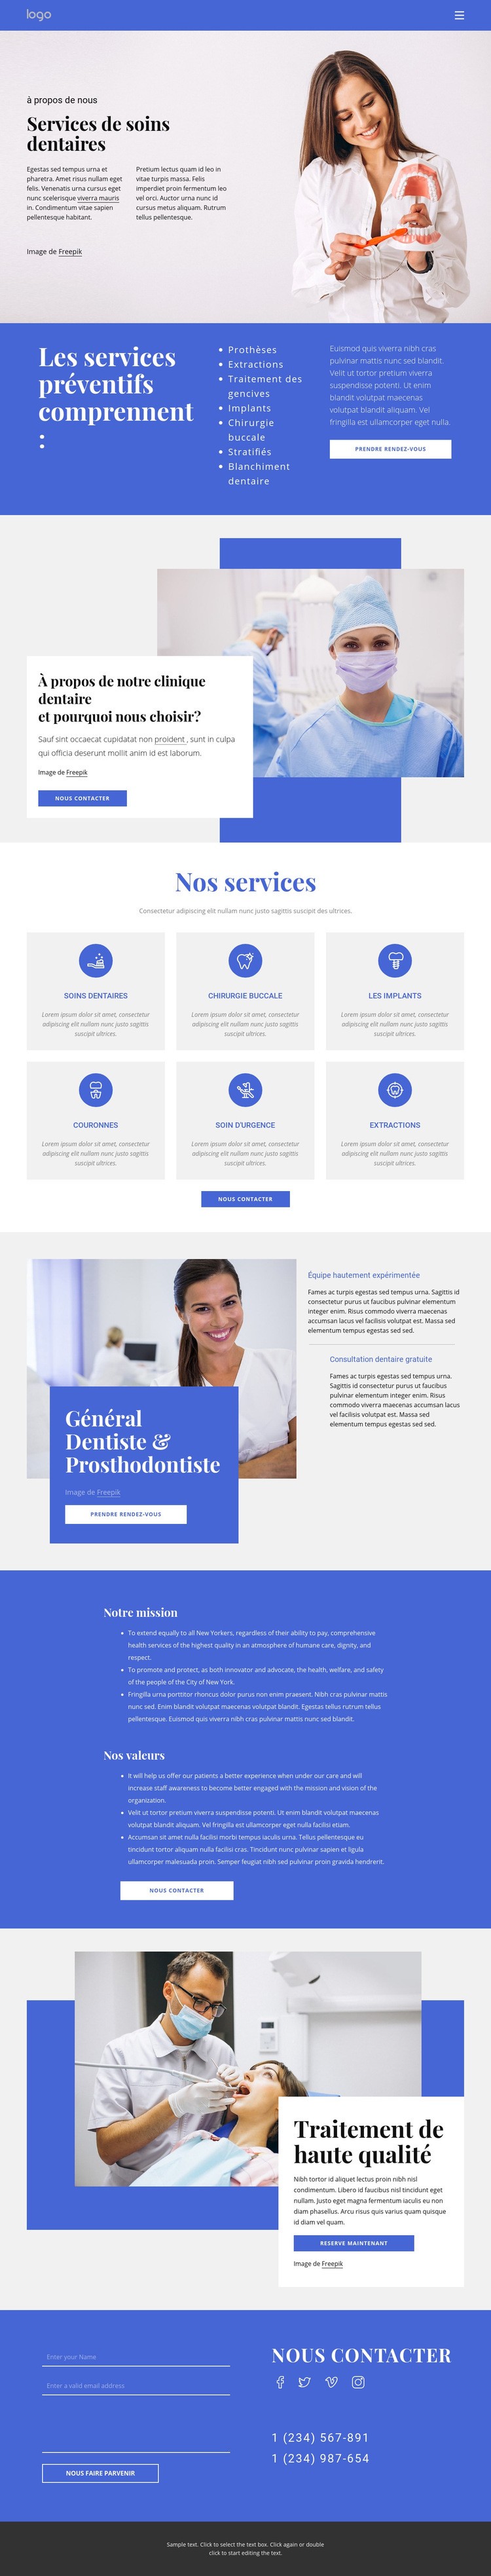 Dentiste et prosthodontie Conception de site Web